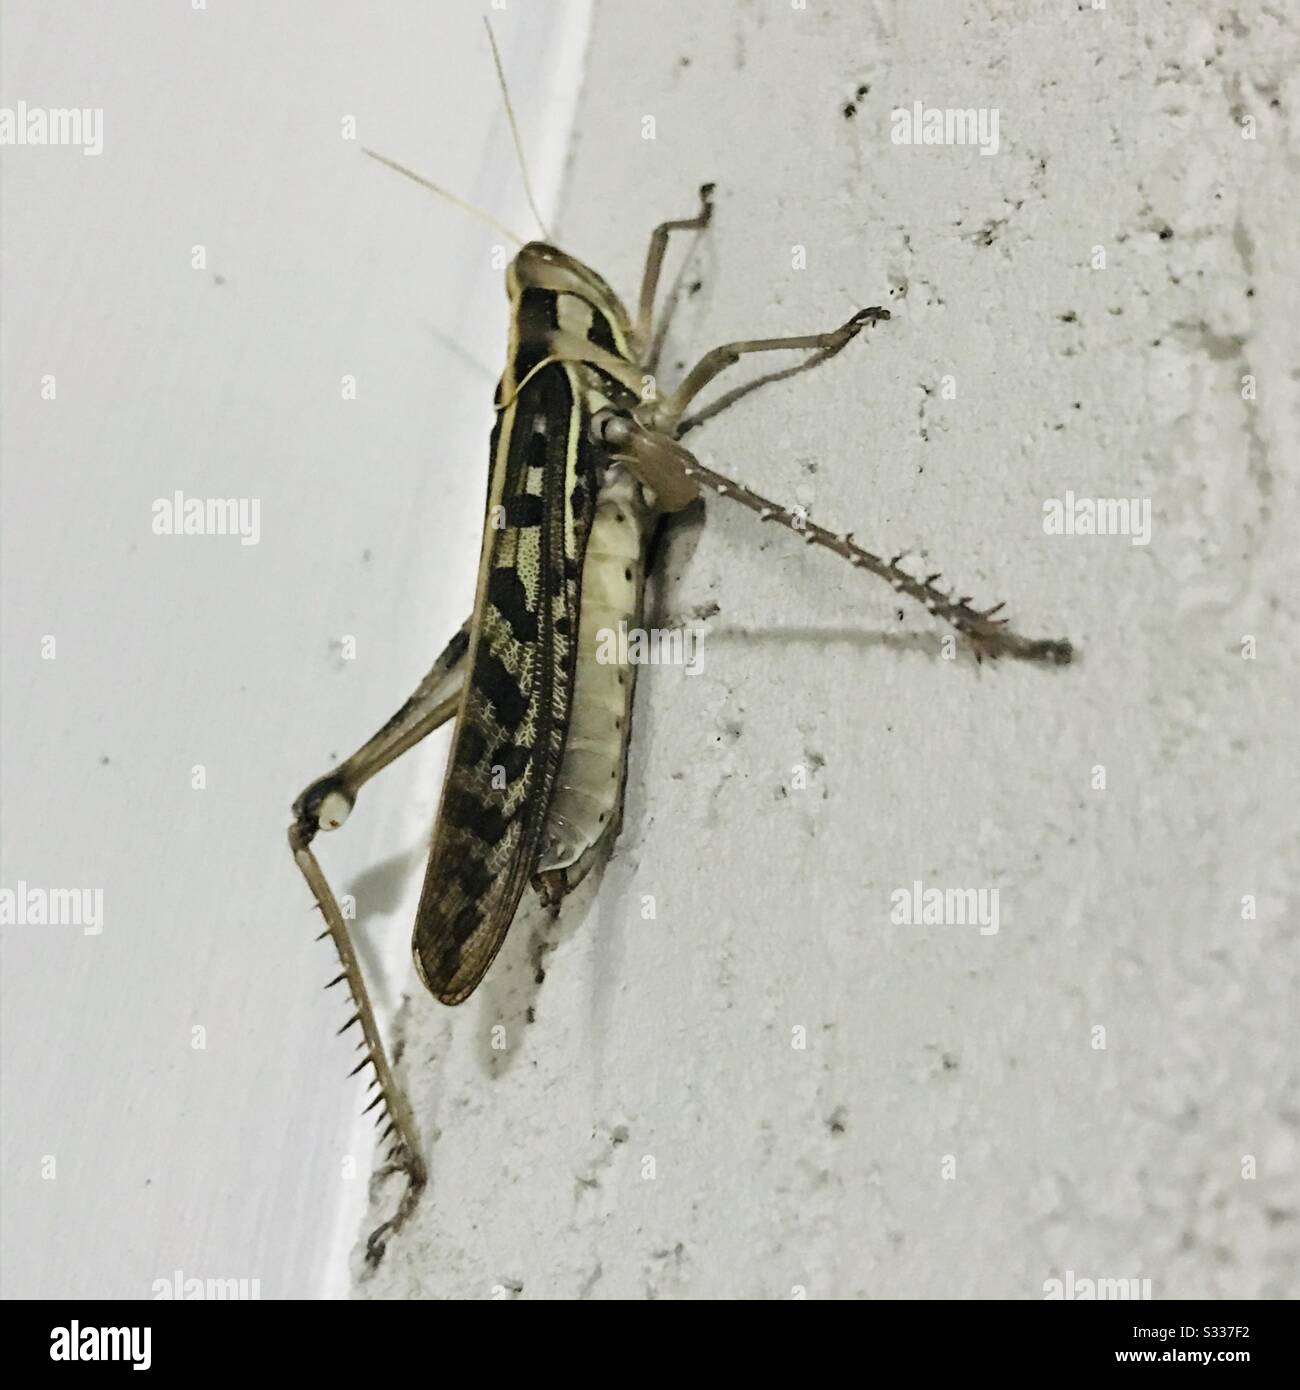 Heuschrecken, kurze gehörnte braune Farbe Grasshopper mit haarigen Beinen gehen zu fliegen, stehen in einer Wand, Gras Trichter-zoomed Nahaufnahme Bild Stockfoto